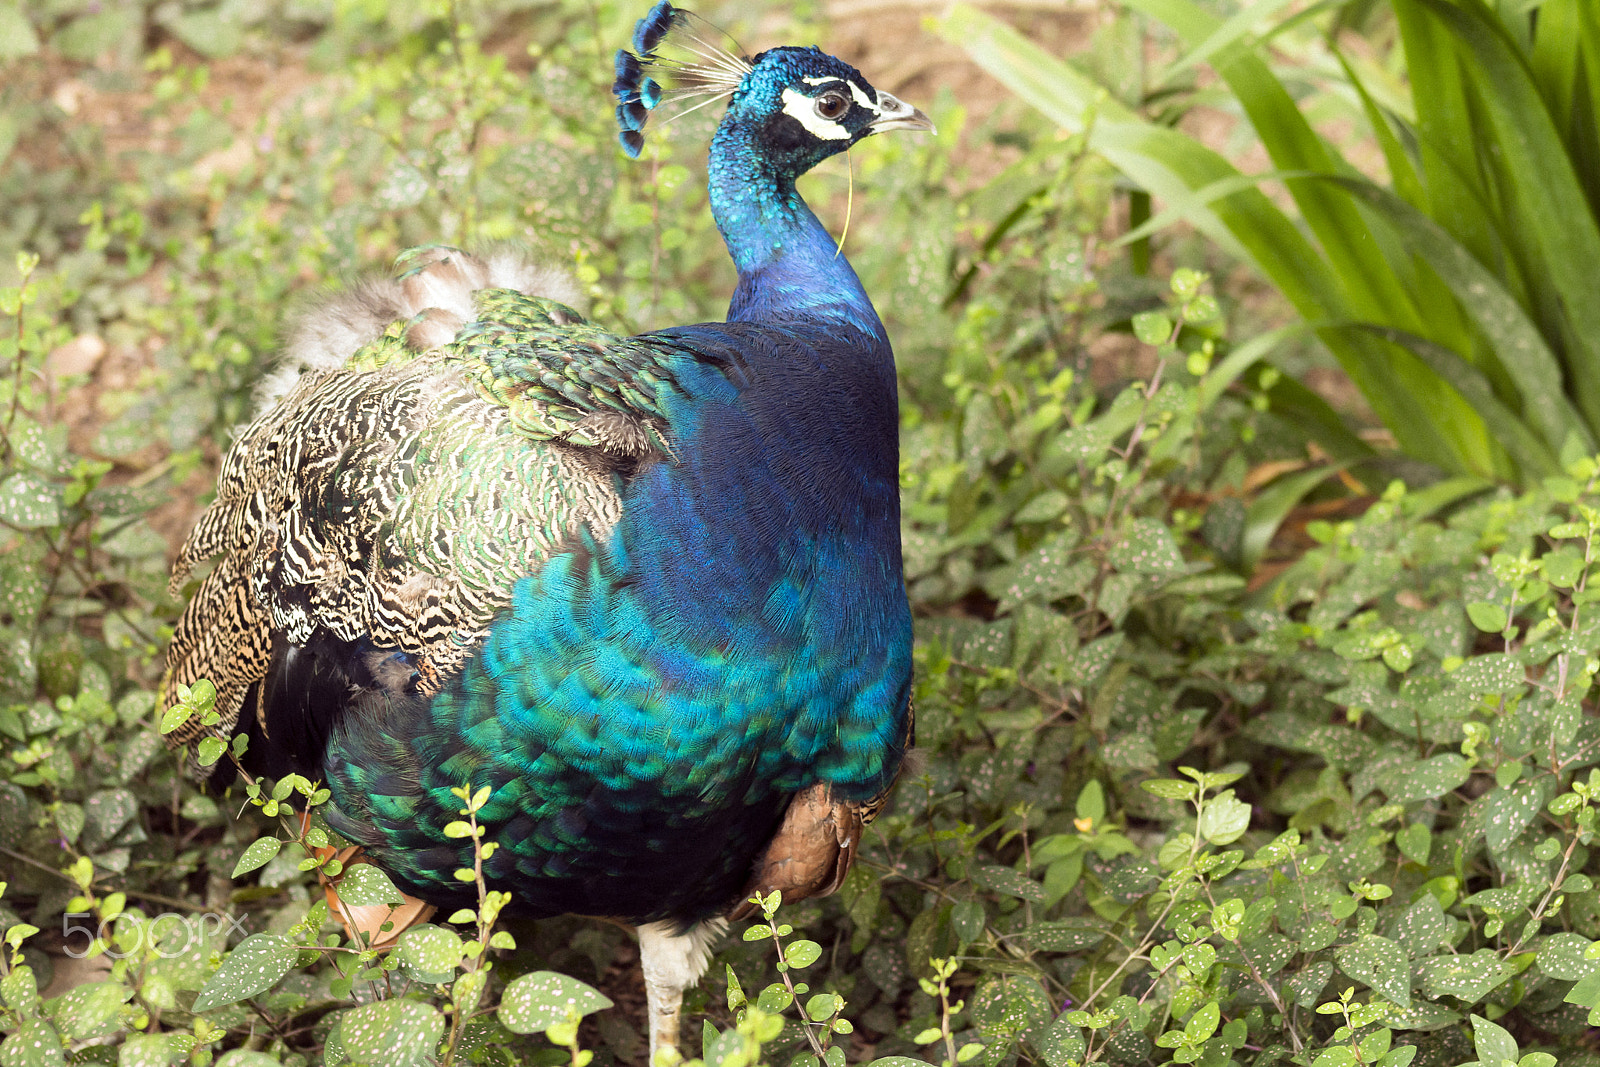 Canon EOS 70D sample photo. The blue peacock photography